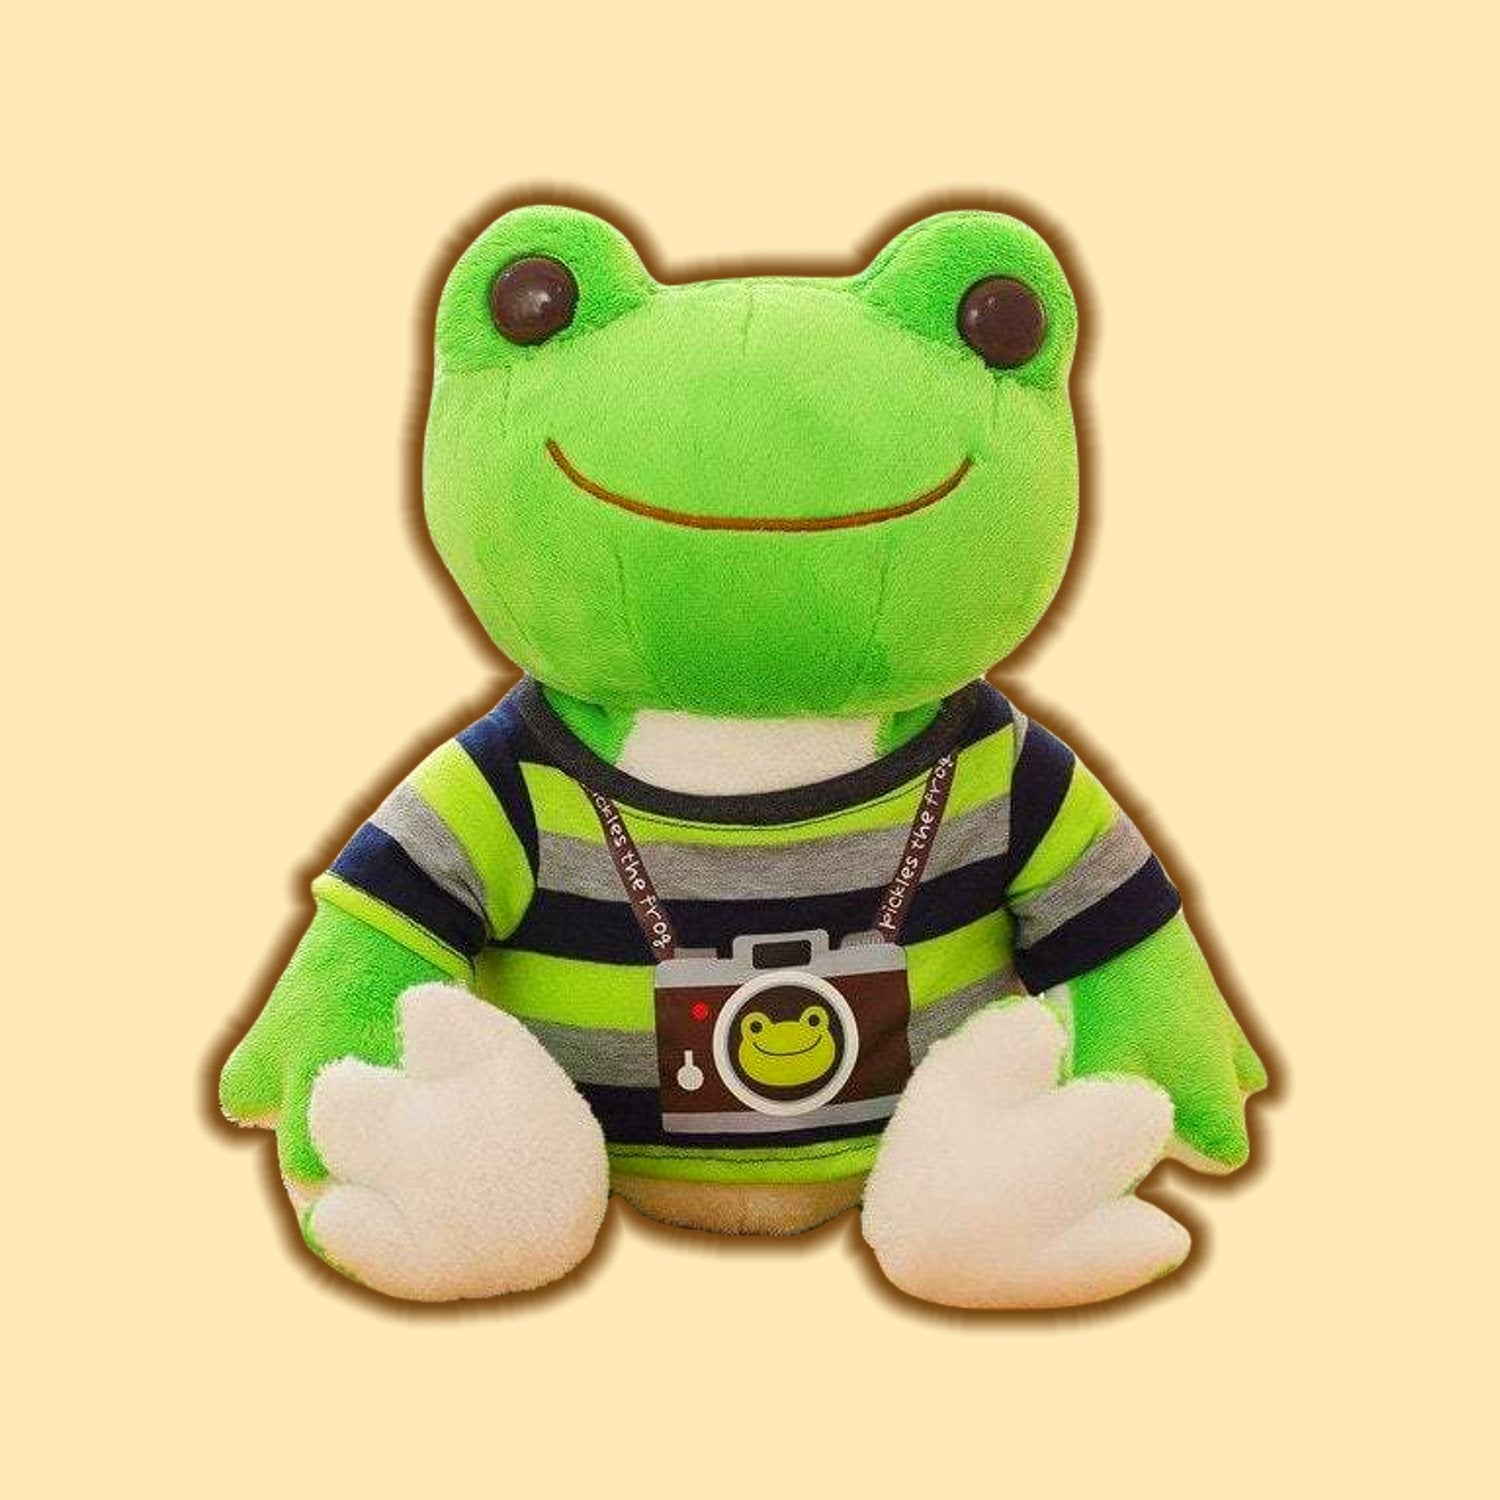 Plush Stuffed Animal Toy Cute Frog Squishy Soft Plush Toy 20cm